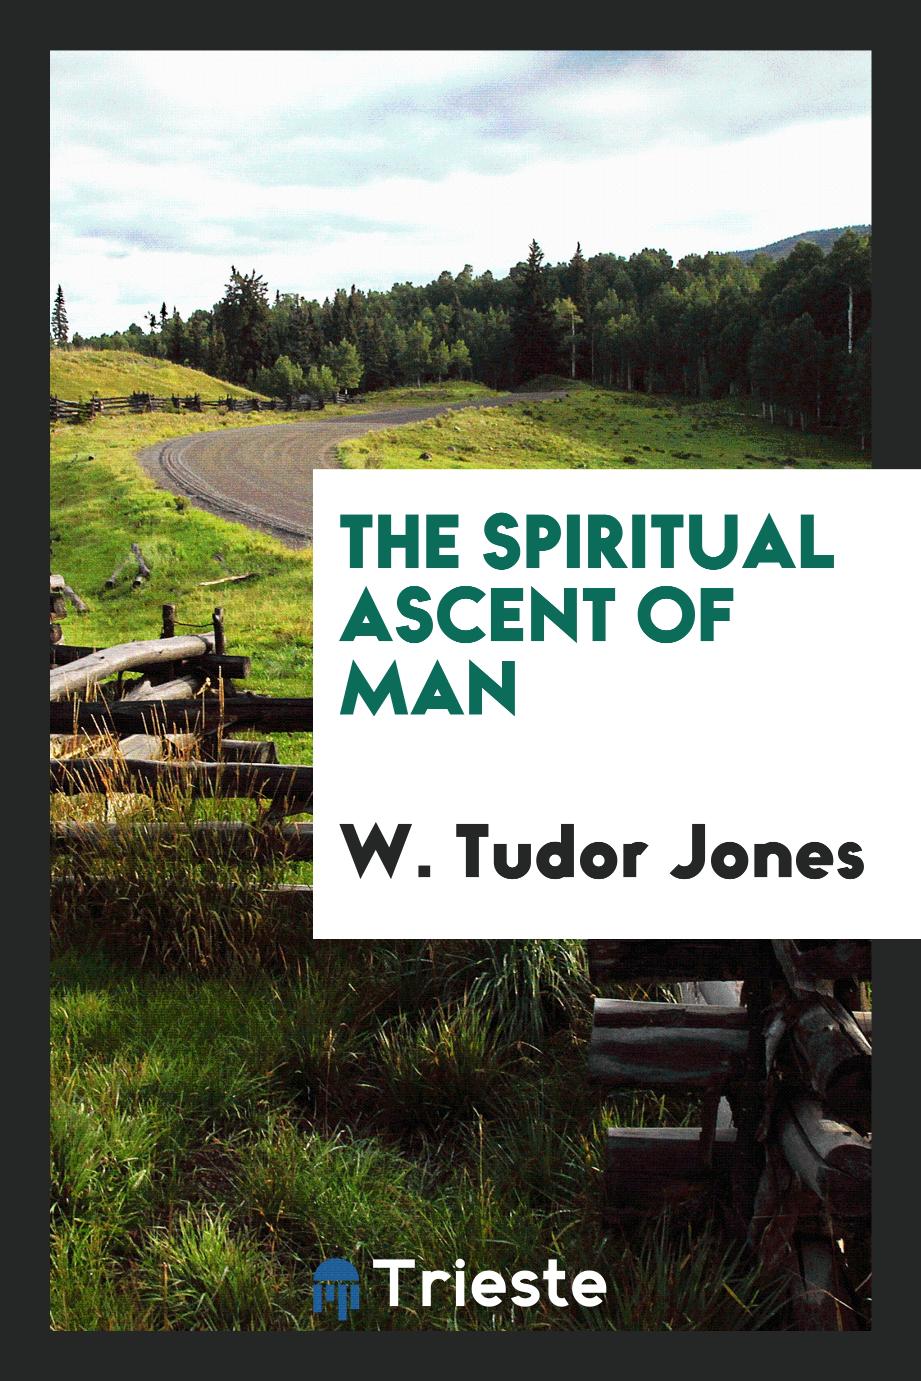 The spiritual ascent of man